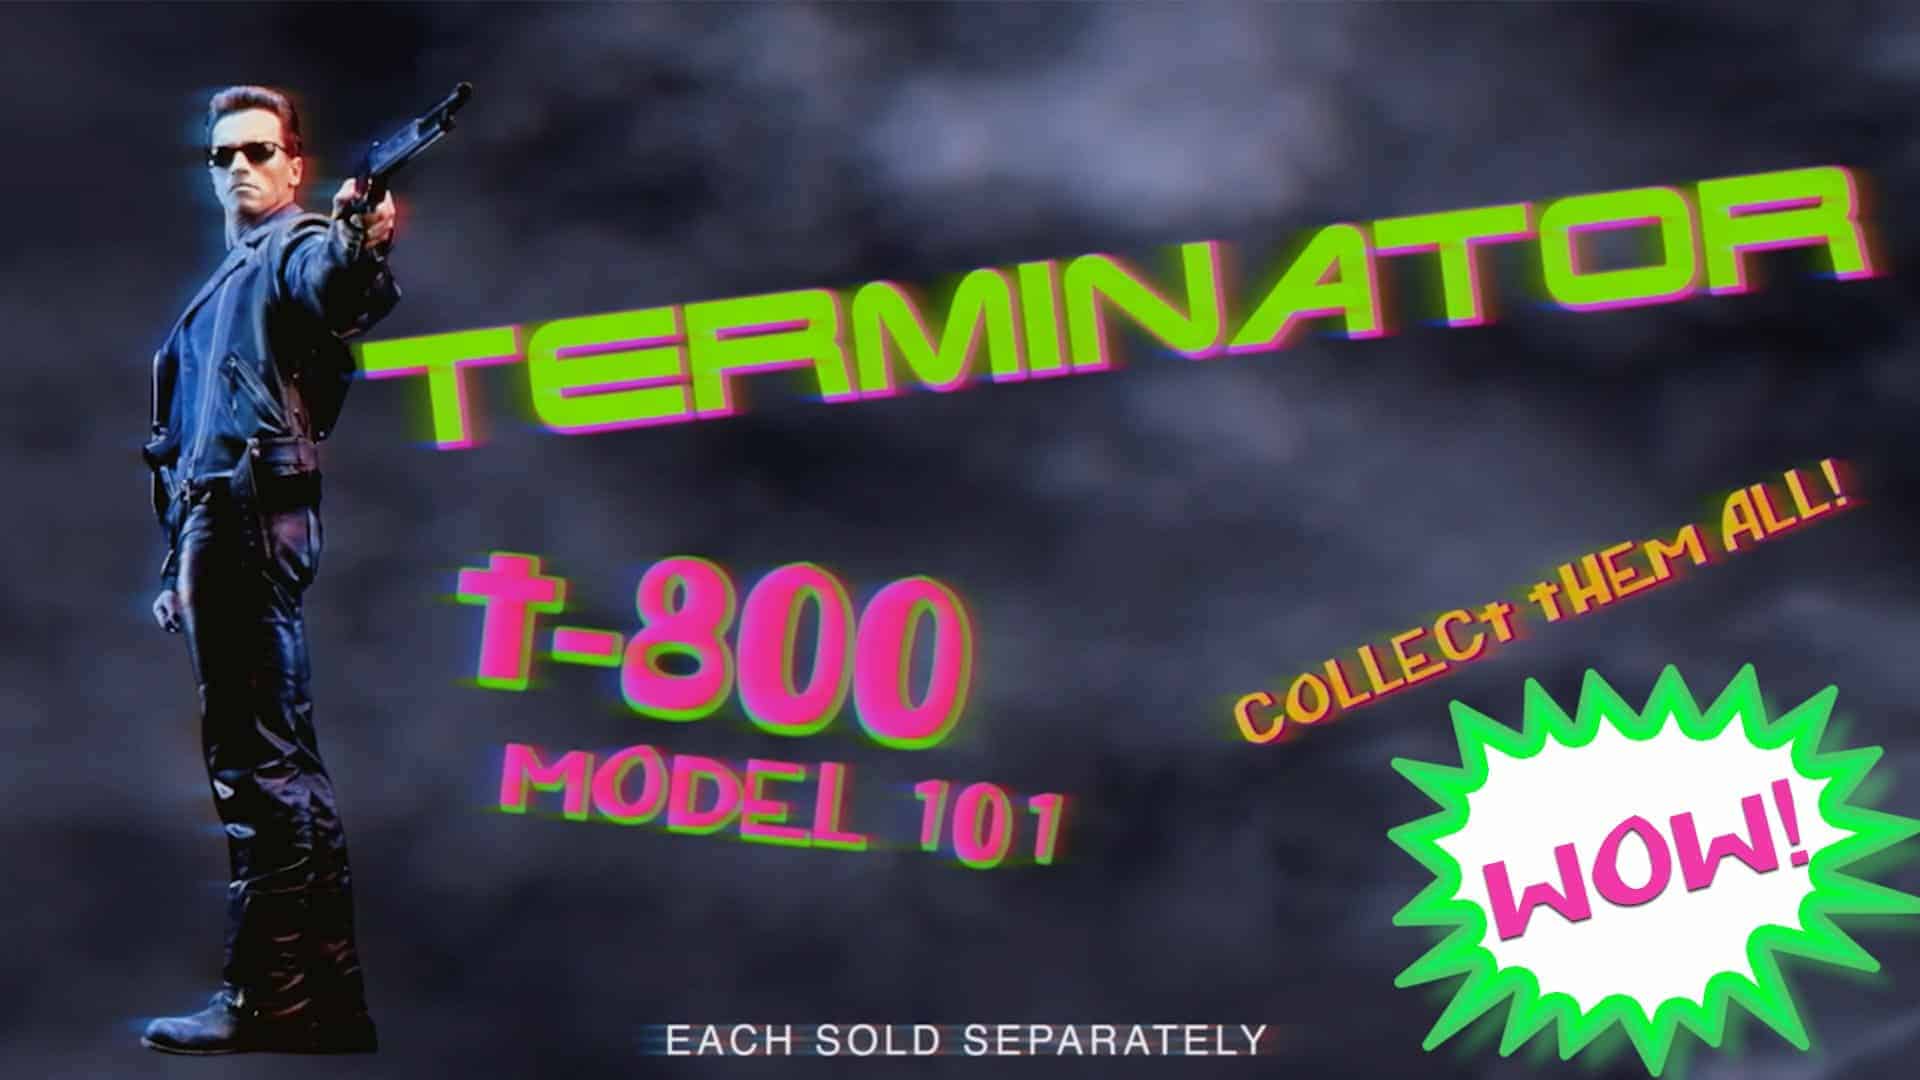 Reklama zabawek: kup własny terminator!